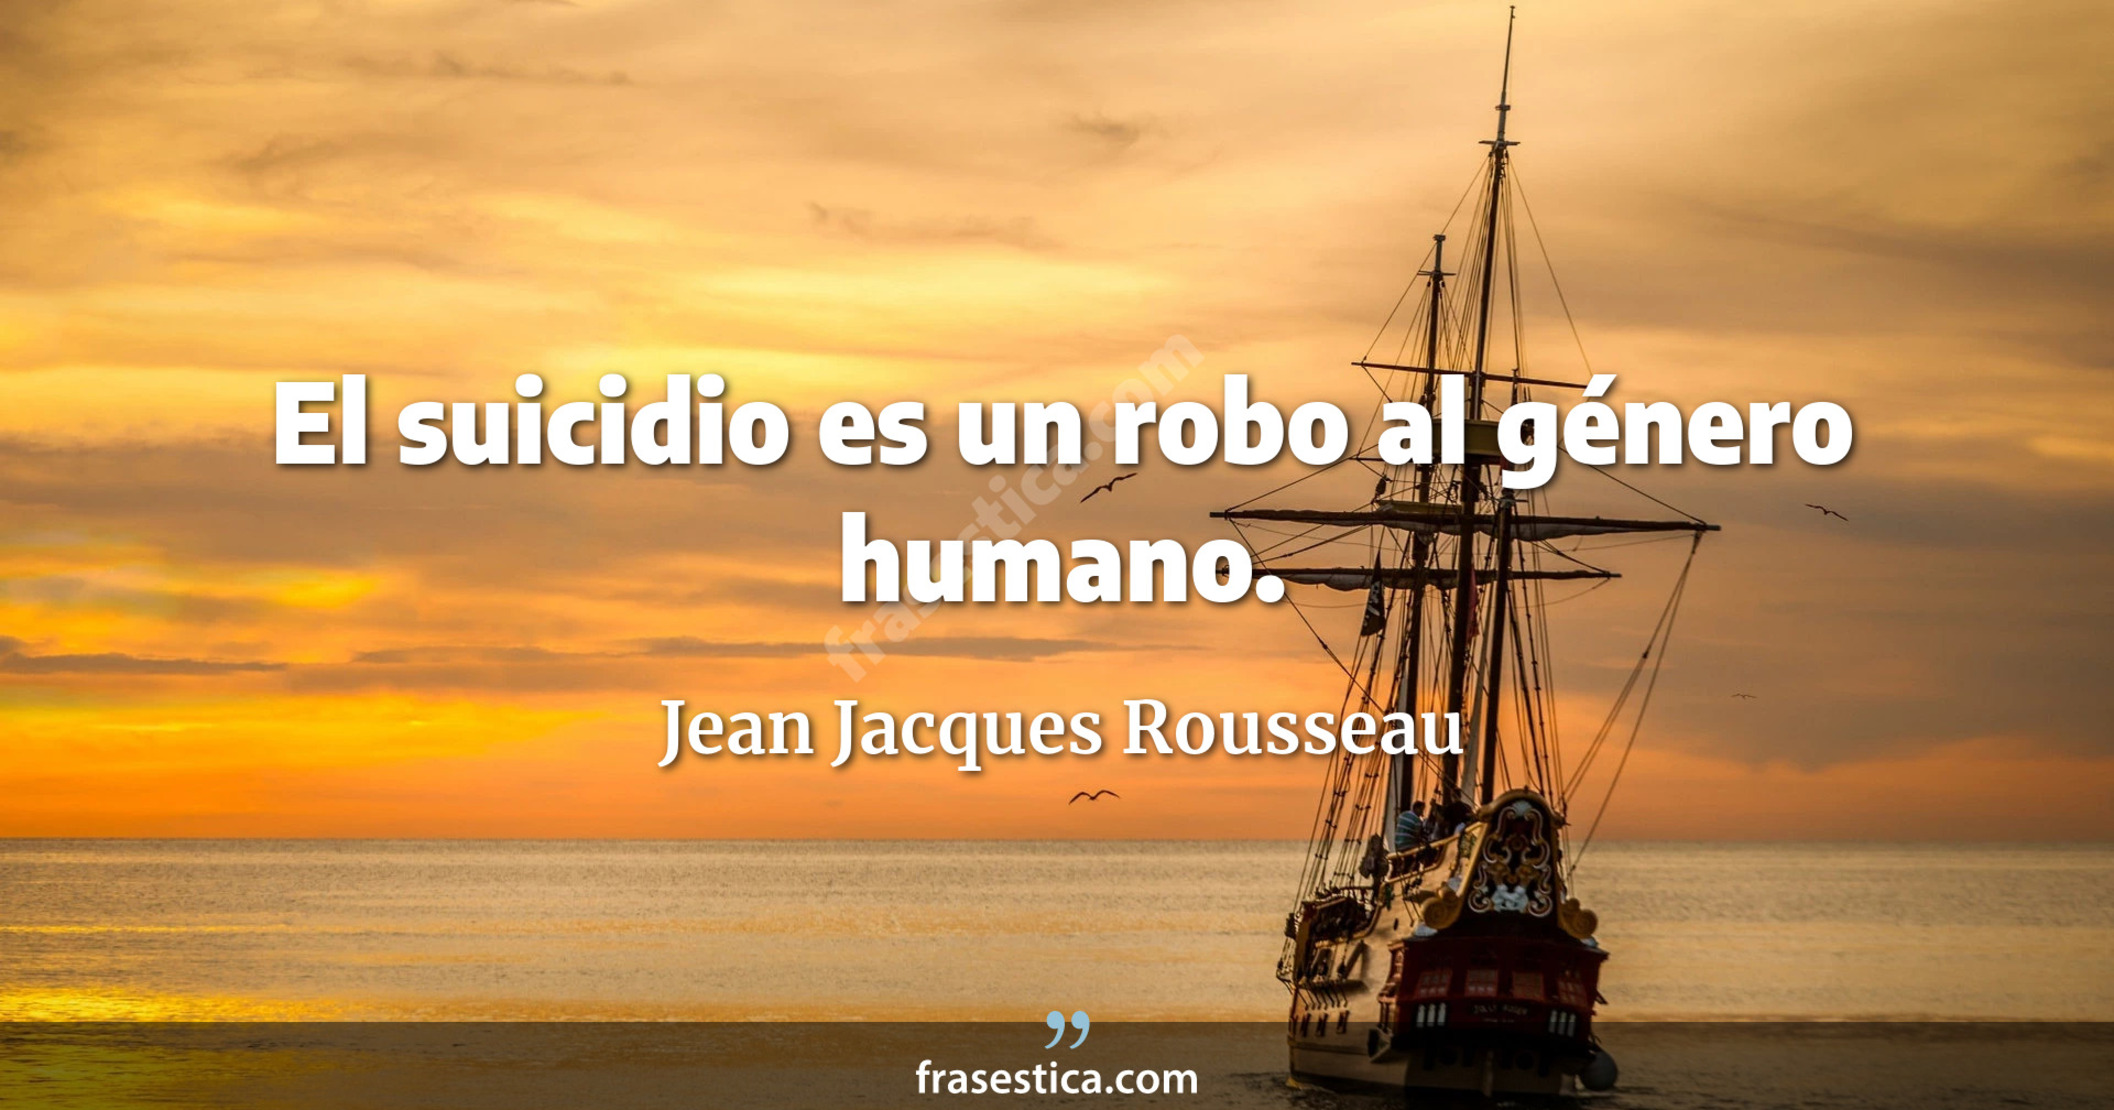 El suicidio es un robo al género humano. - Jean Jacques Rousseau